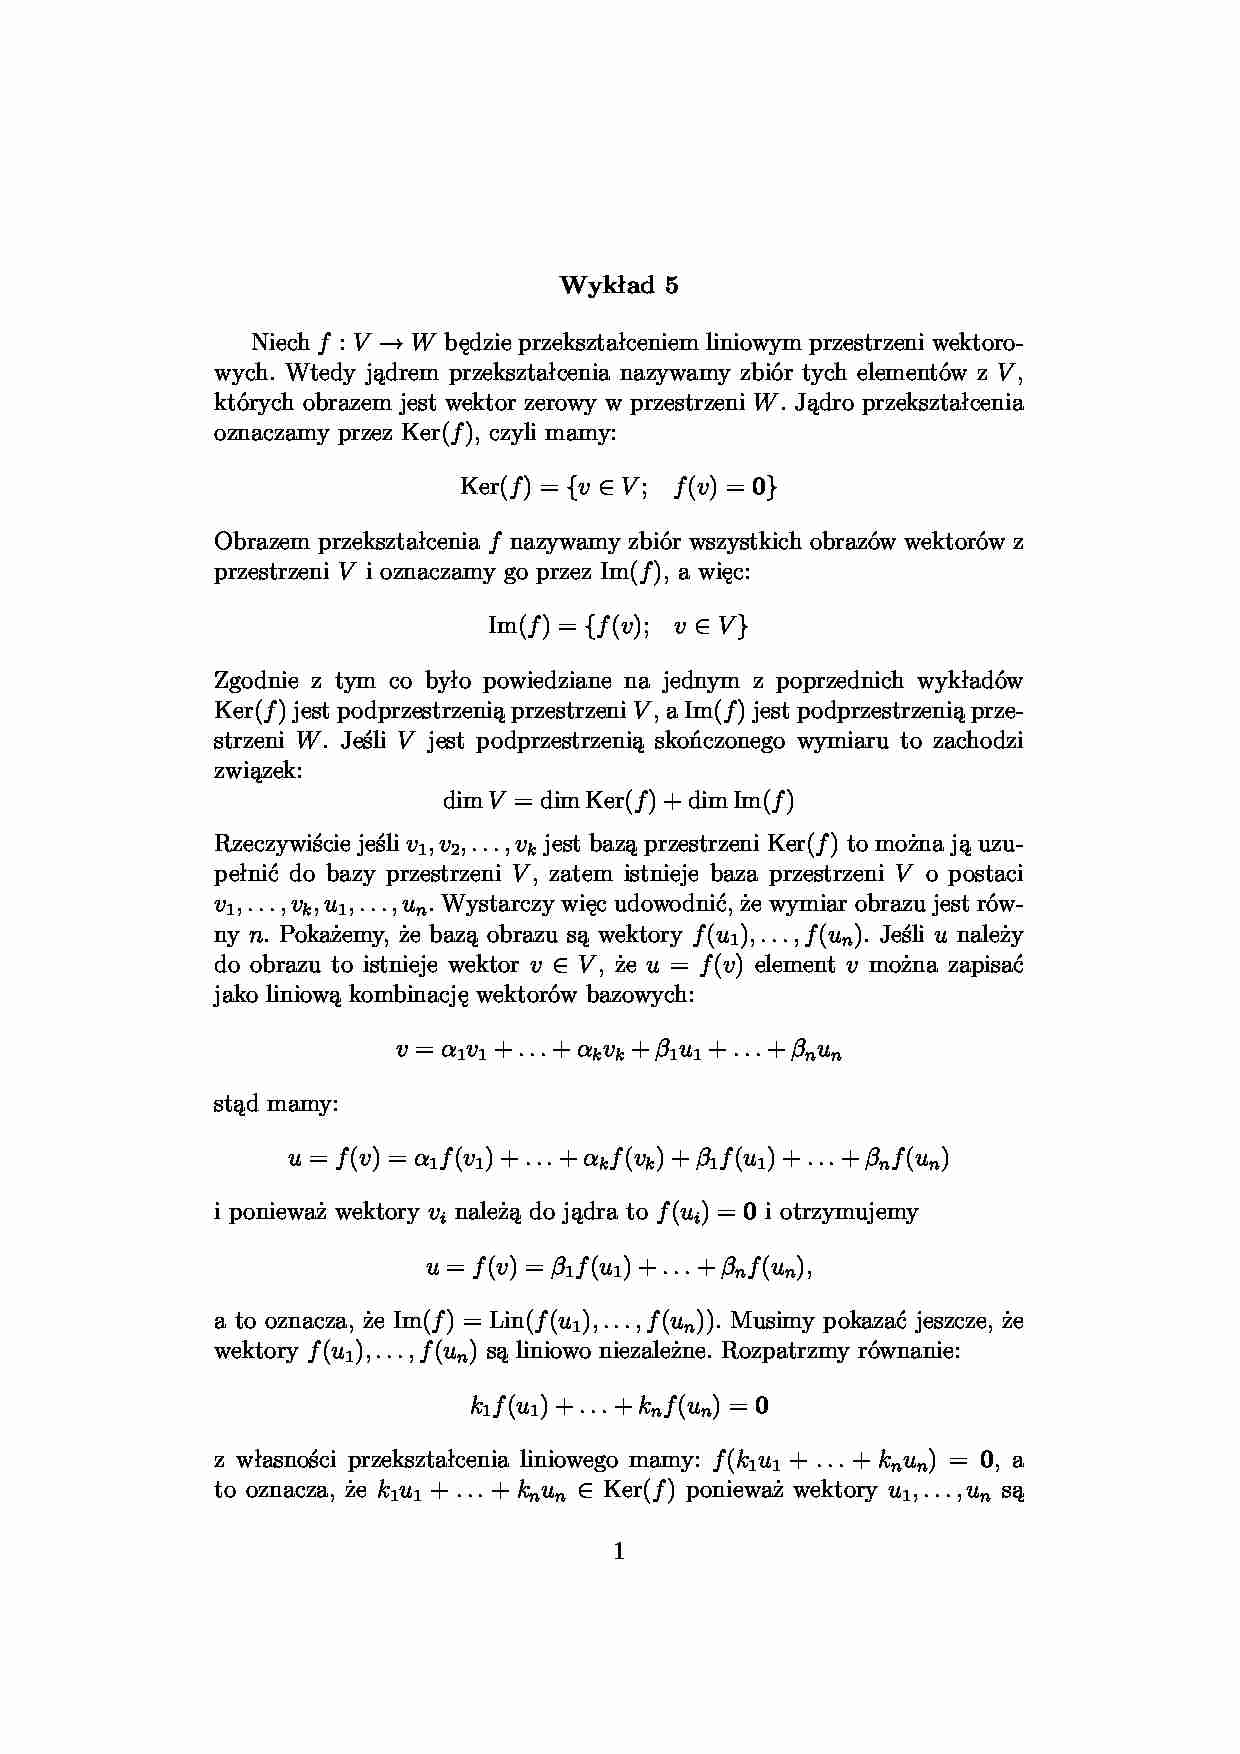 jądro i obraz przekształcenia liniowego - Wykład 5 - strona 1